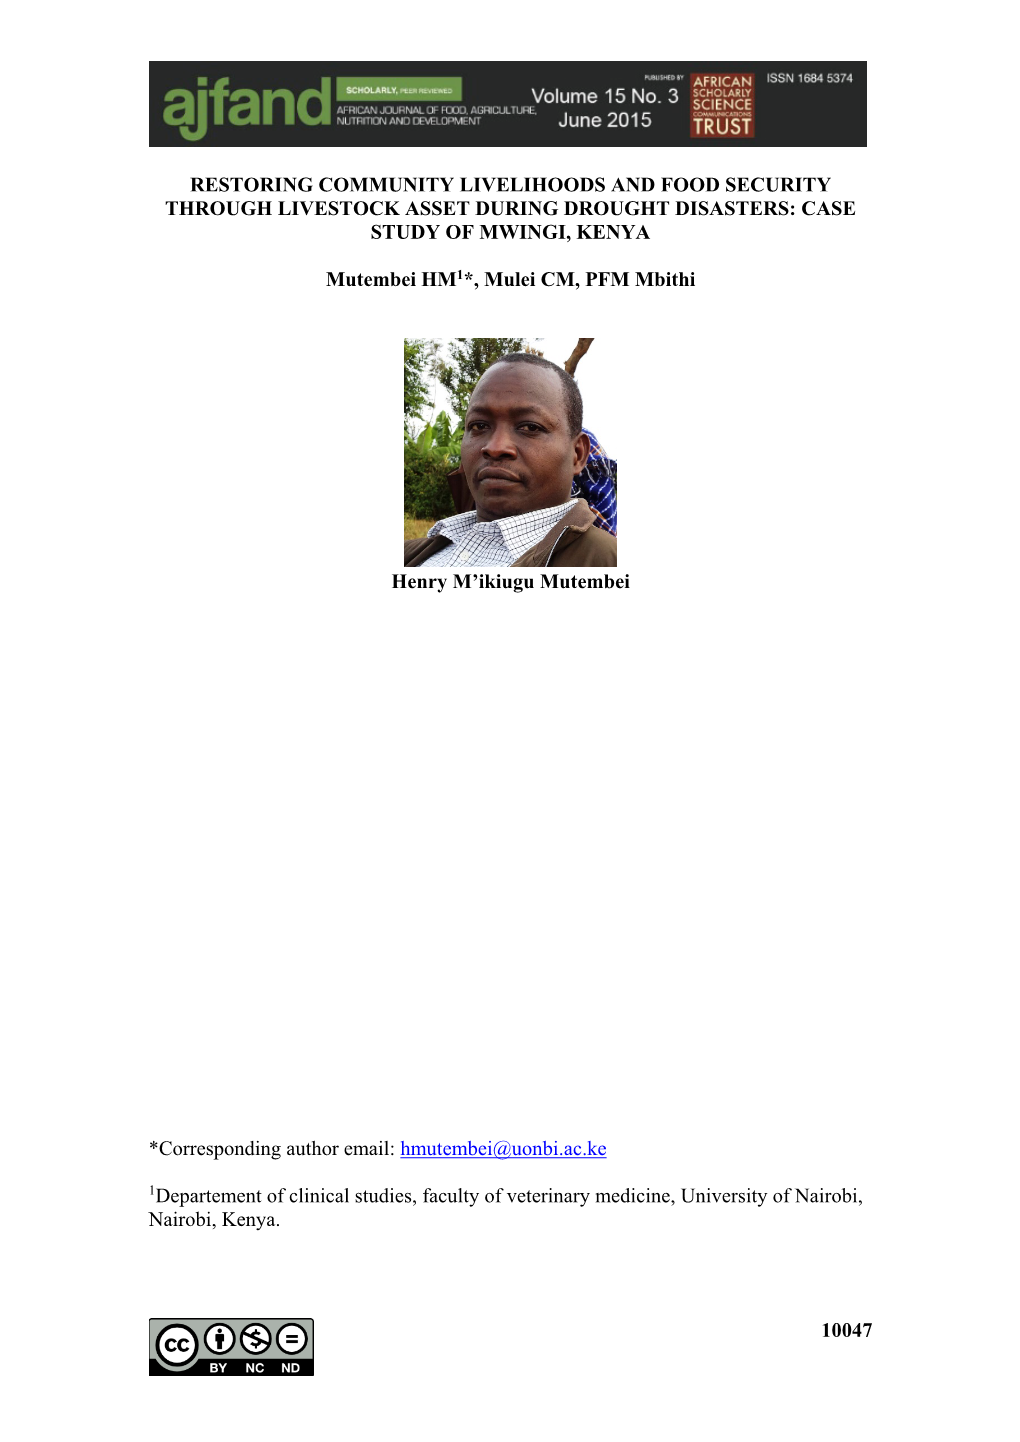 Case Study of Mwingi, Kenya